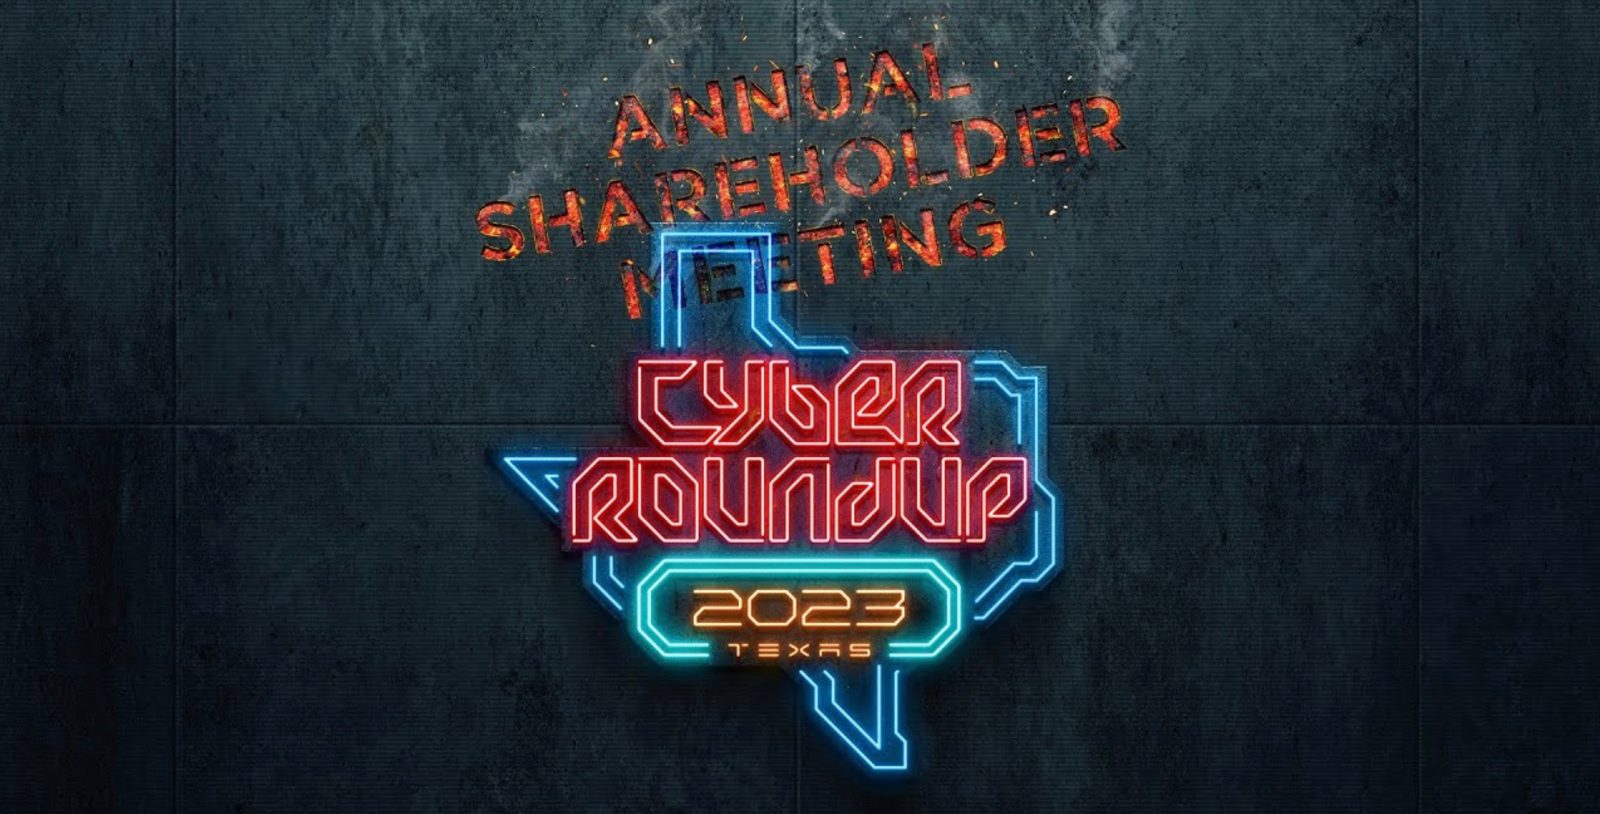 Tesla 2023 Cyber Roundup shareholderes meeting